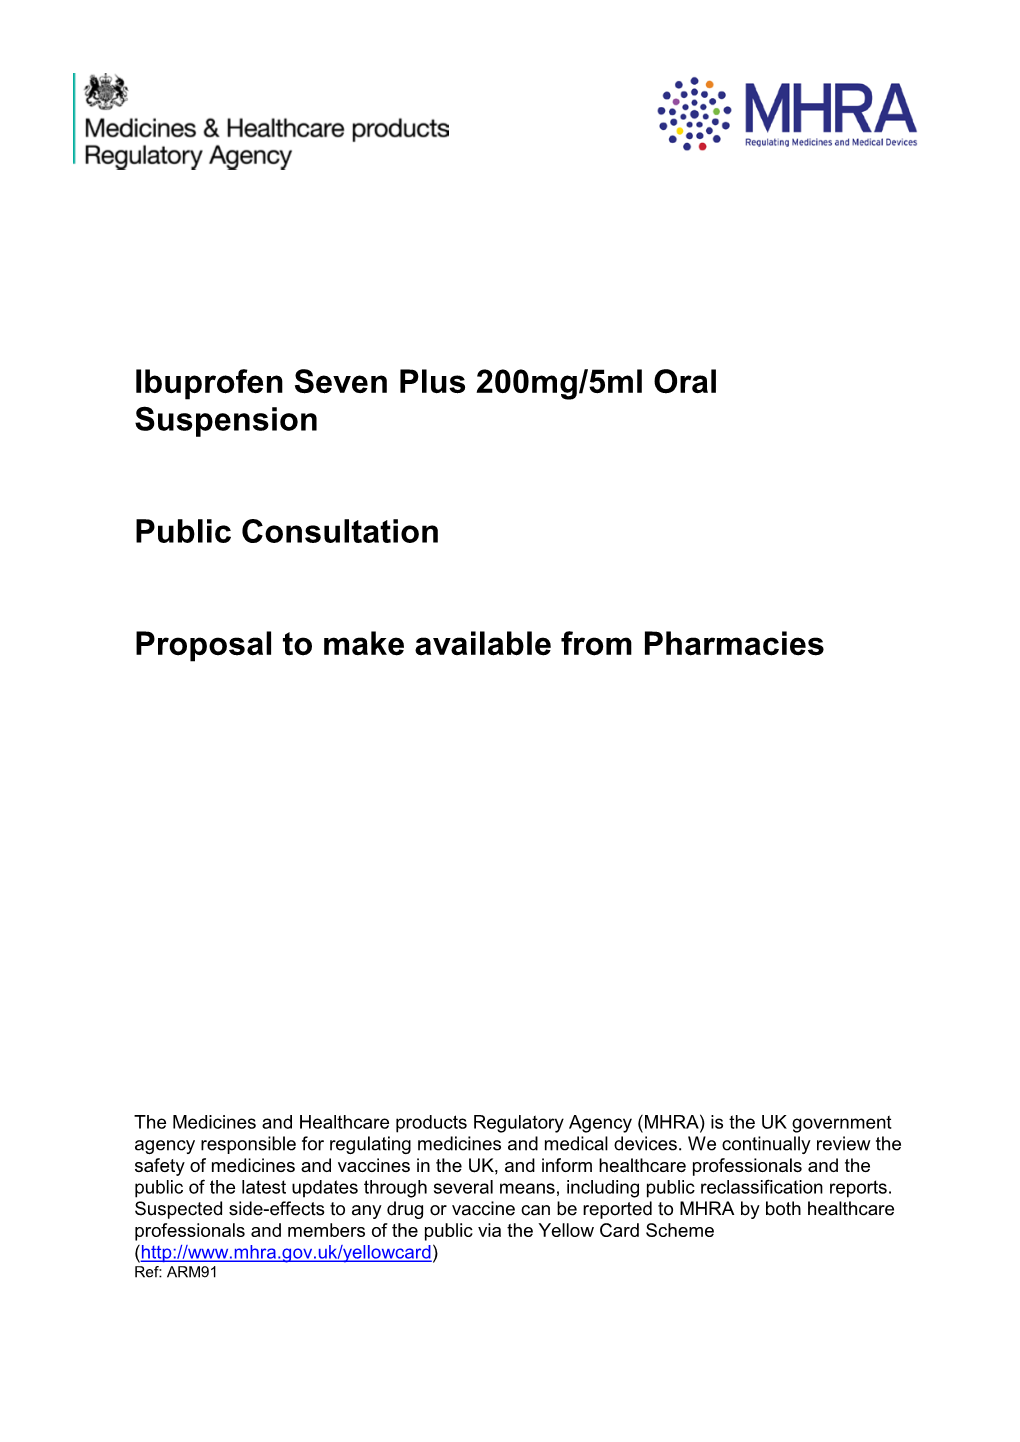 Ibuprofen Seven Plus 200Mg/5Ml Oral Suspension